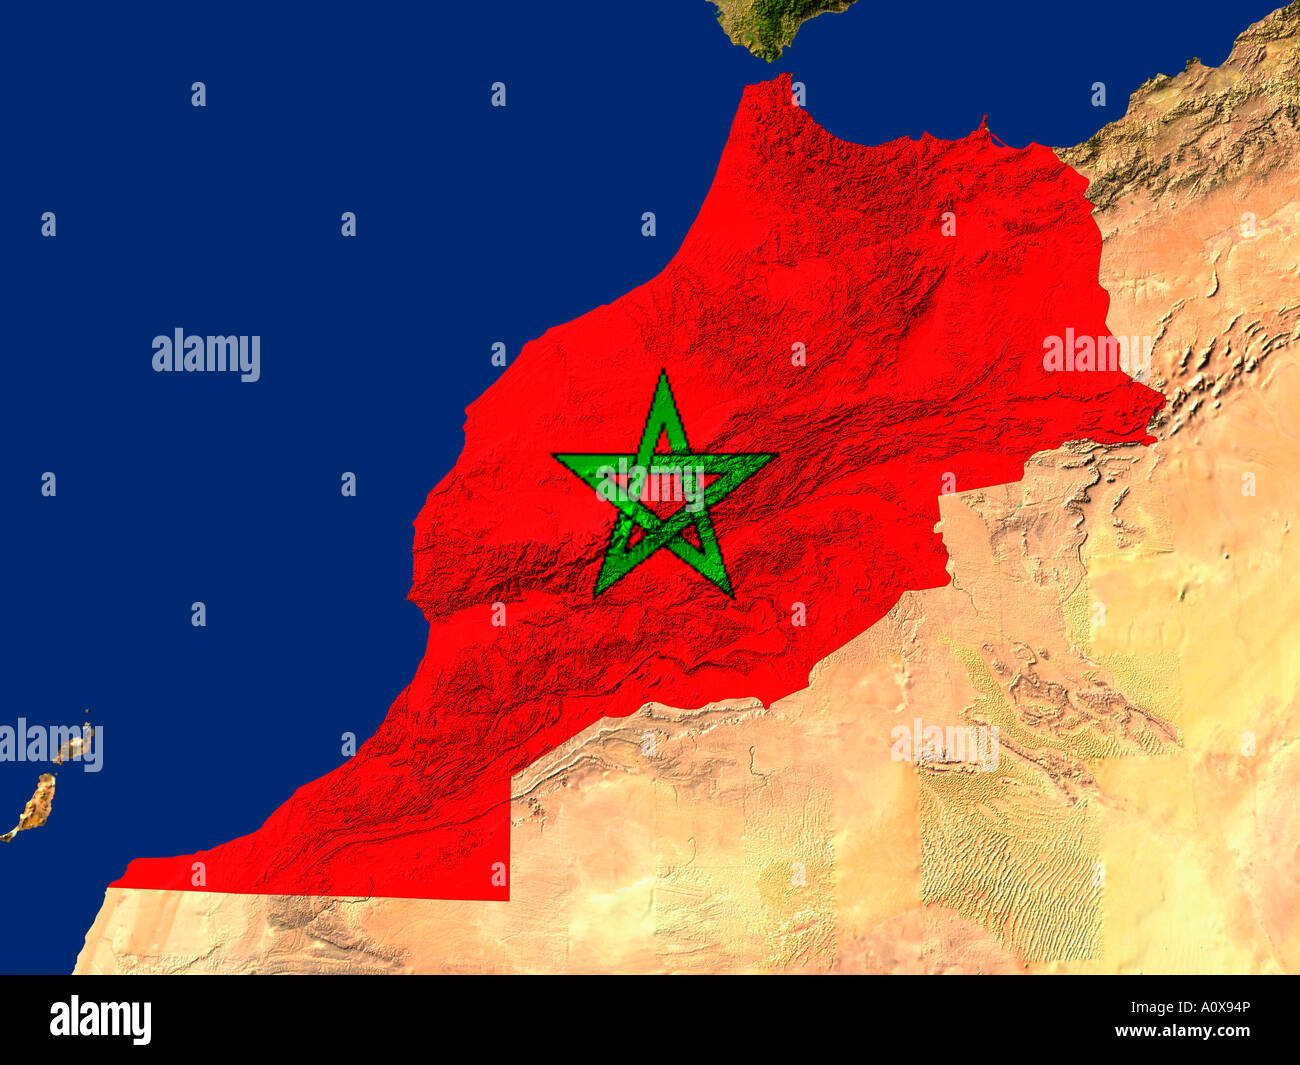 Image satellite du Maroc couverts par le drapeau de ce pays Banque D'Images